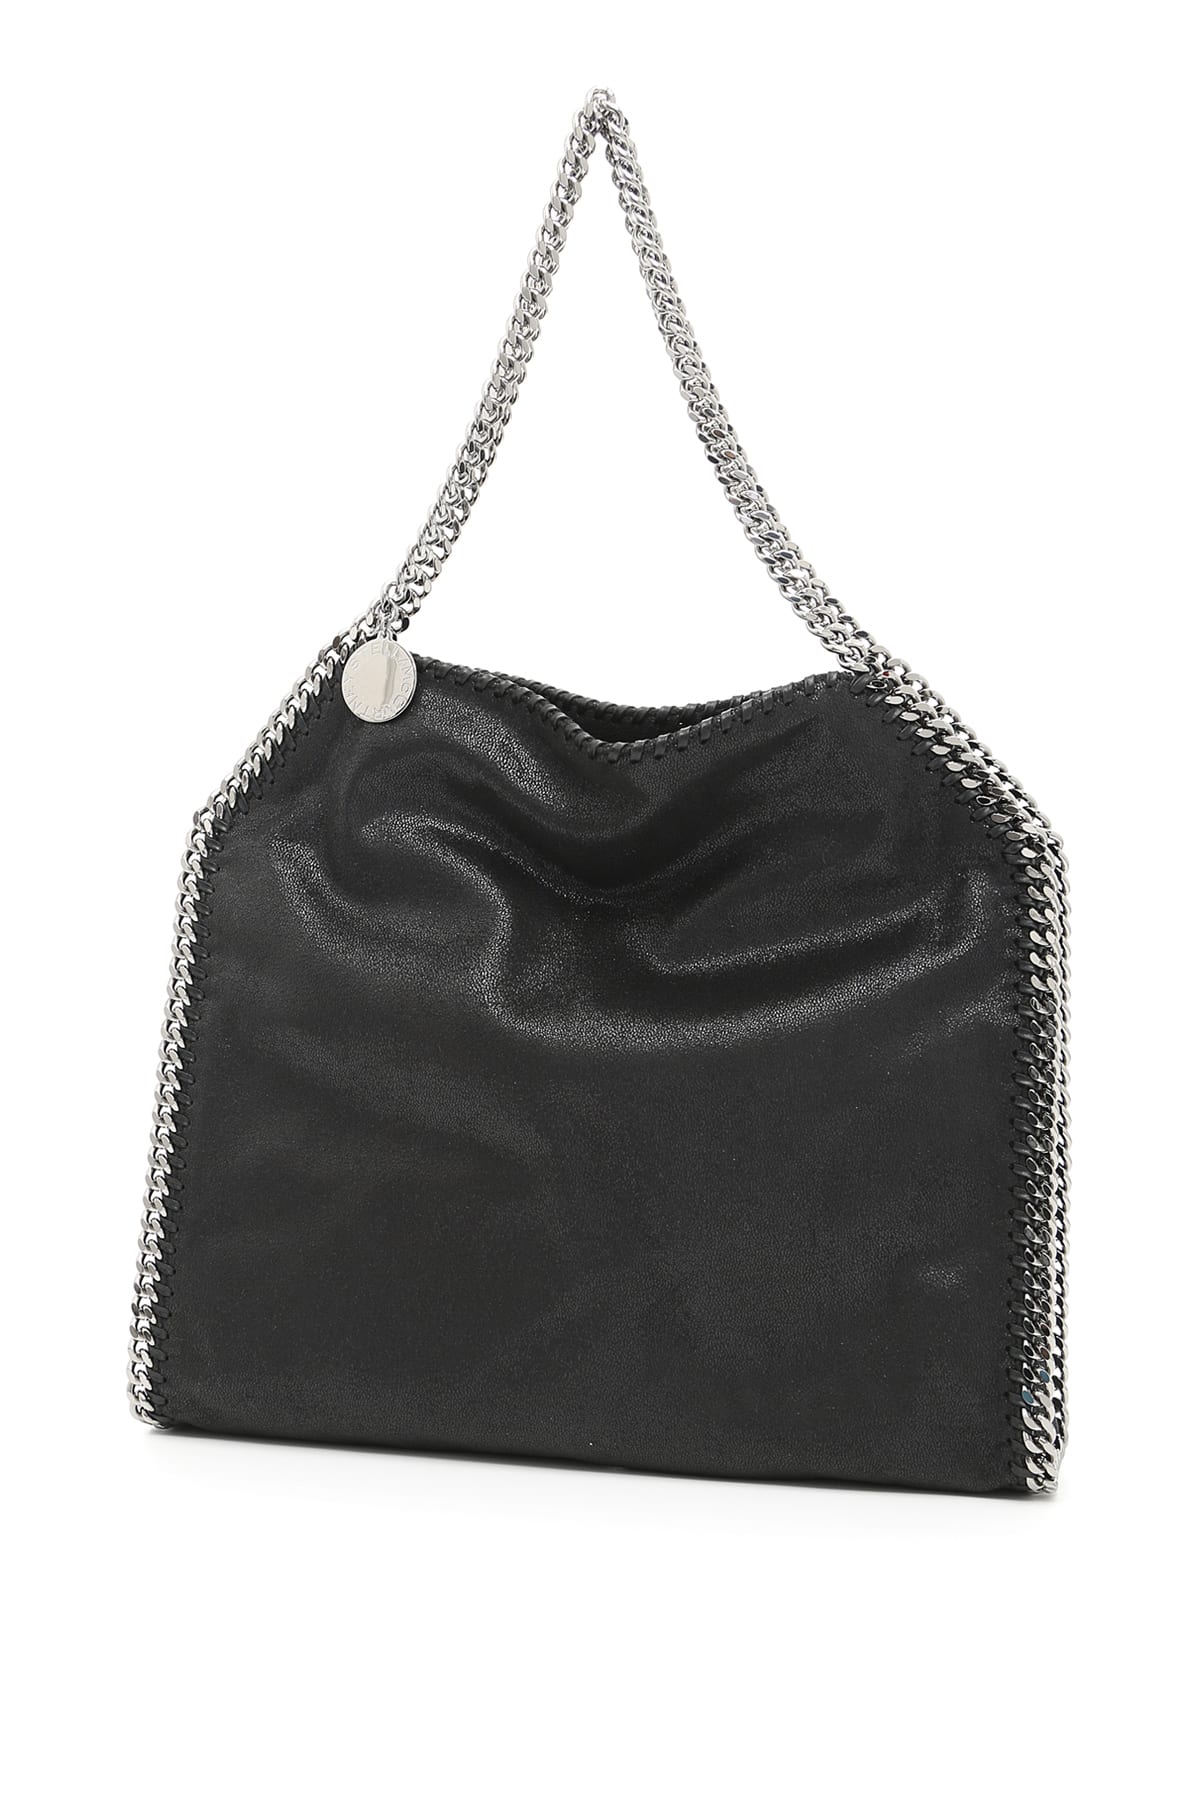 Stella Mccartney Small Falabella Tote Bag In Black | ModeSens